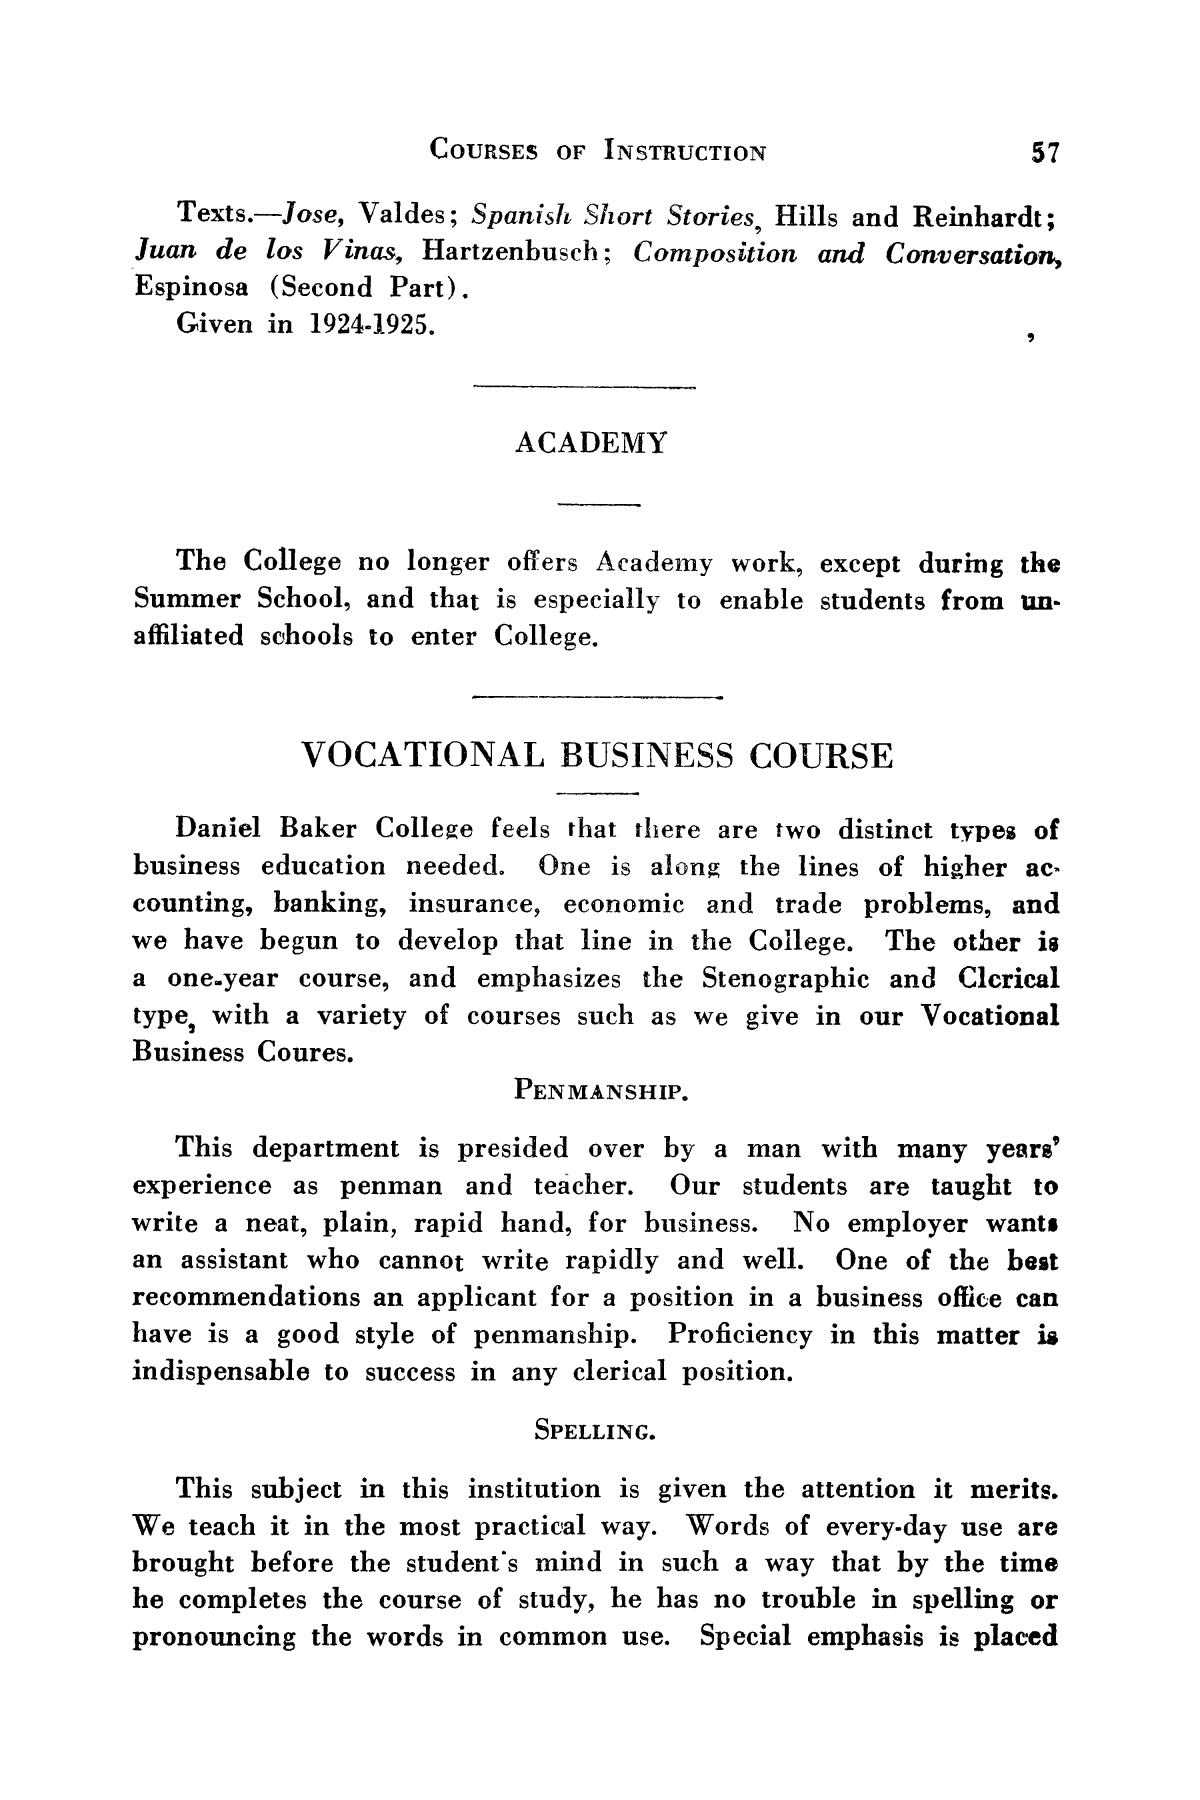 Catalog of Daniel Baker College, 1923-1924
                                                
                                                    57
                                                